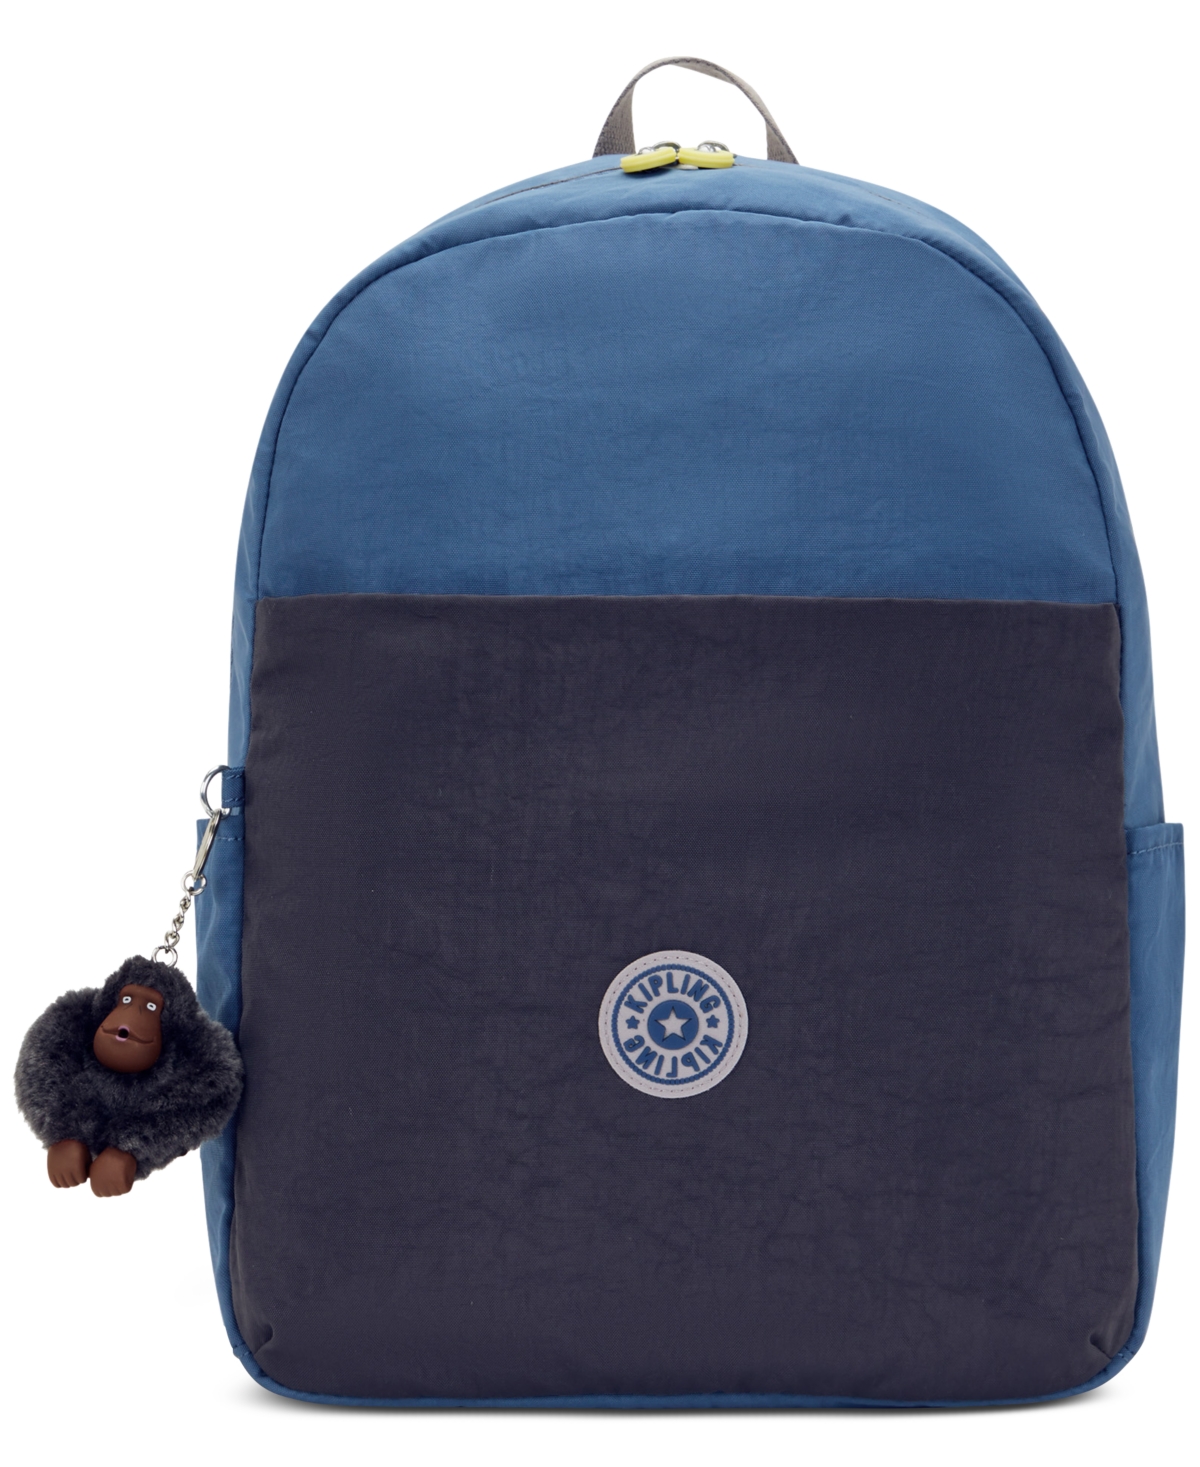 Haydar Laptop Backpack - Gradient Combo